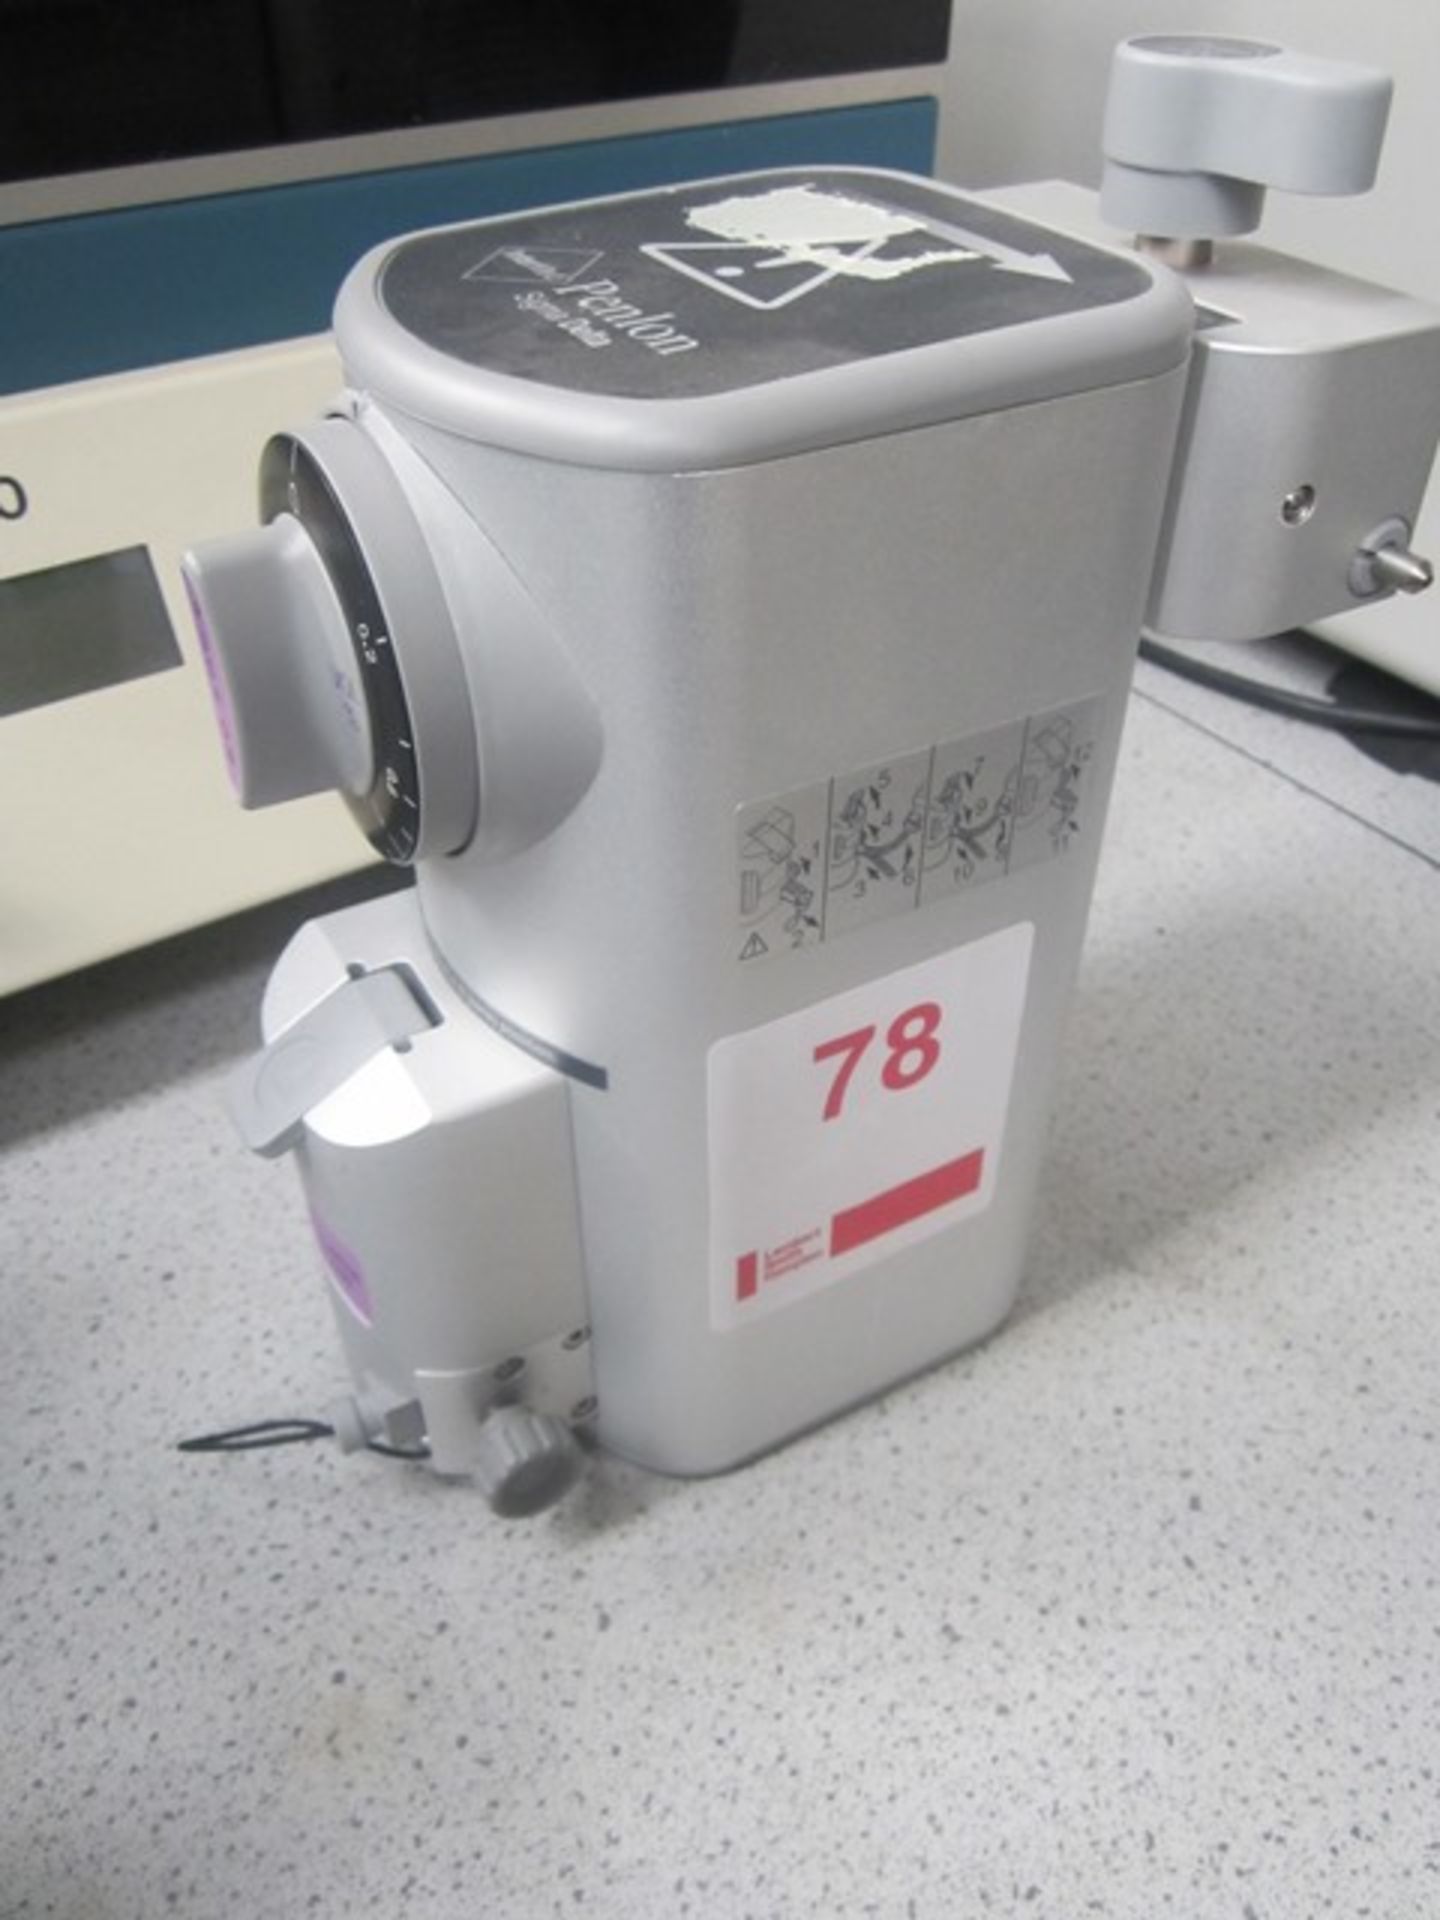 Penlon Sigma Delta Intermed vaporiser, serial number D50505 071